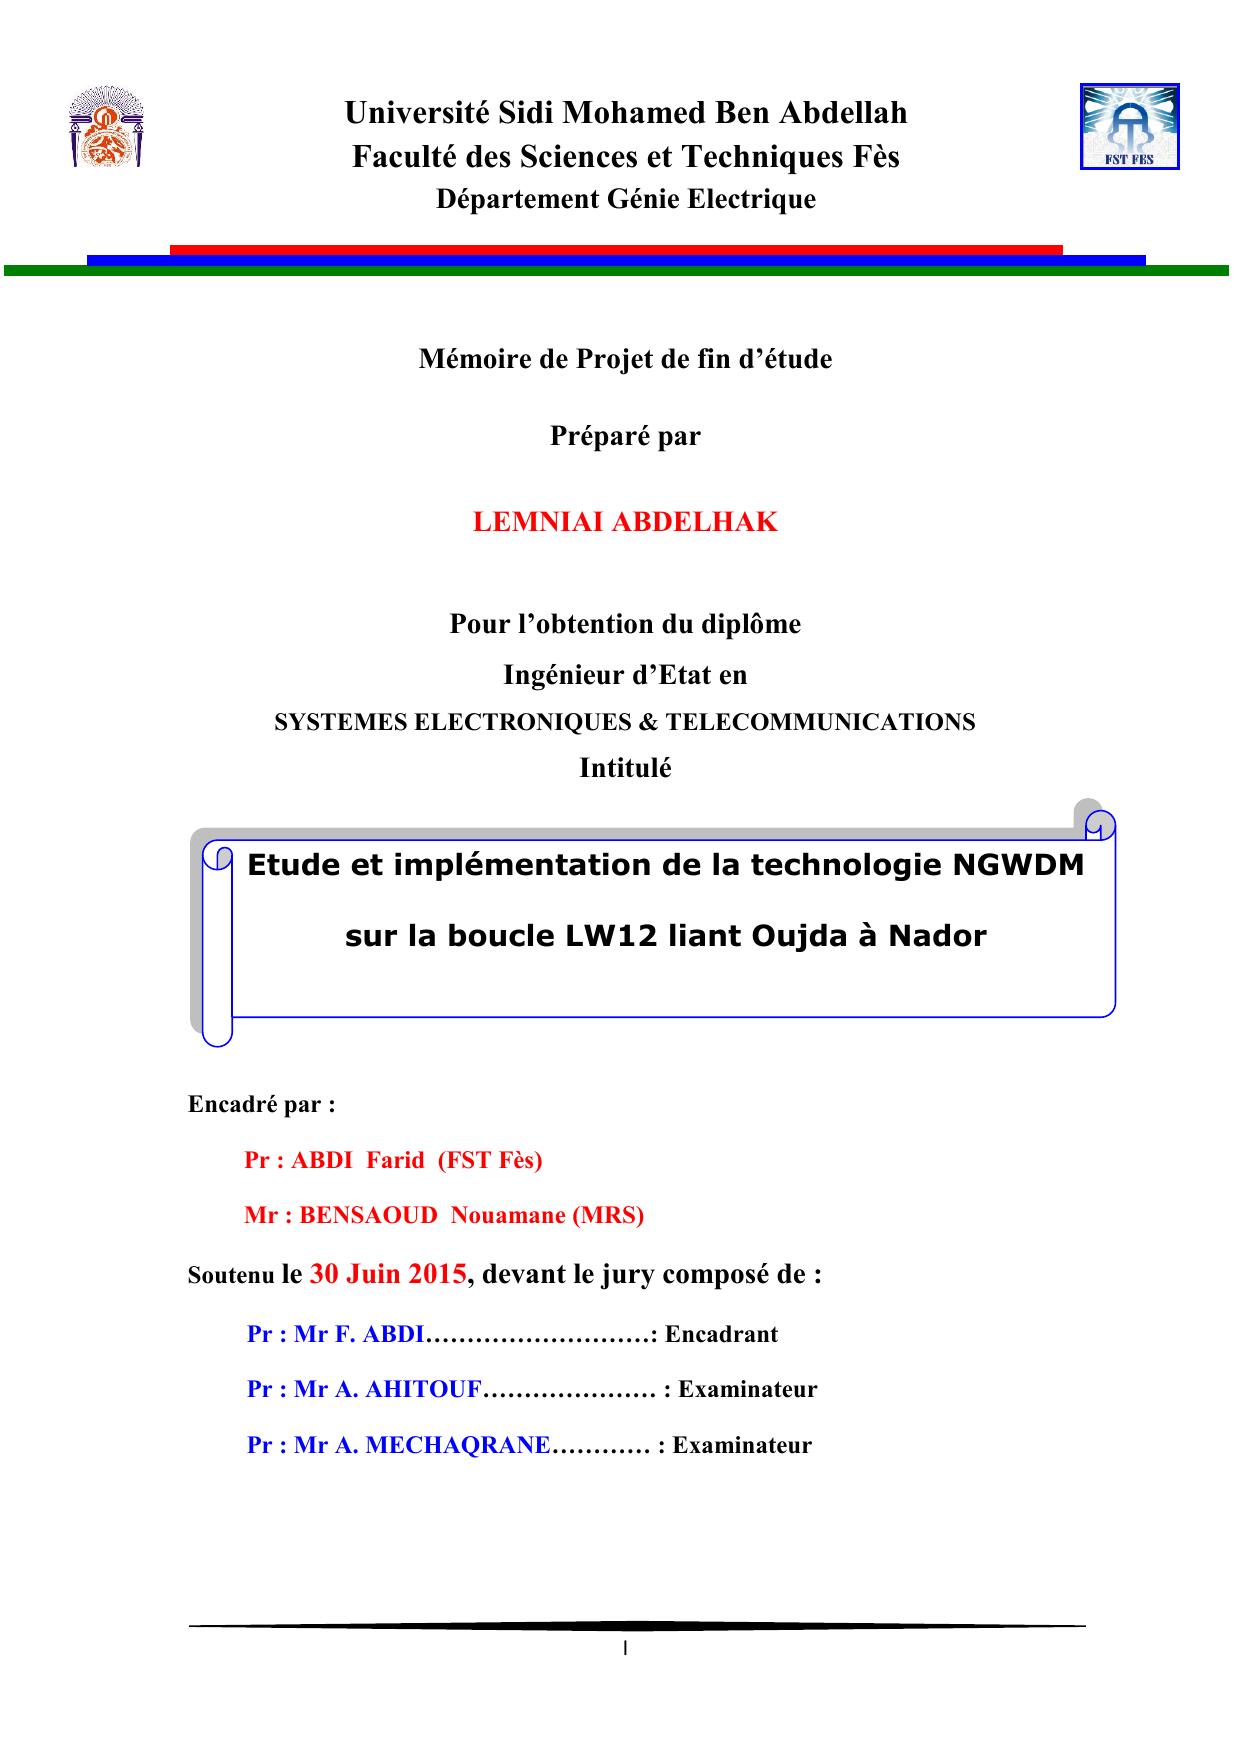 Etude et implémentation de la technologie NGWDM sur la boucle LW12 liant Oujda à Nador